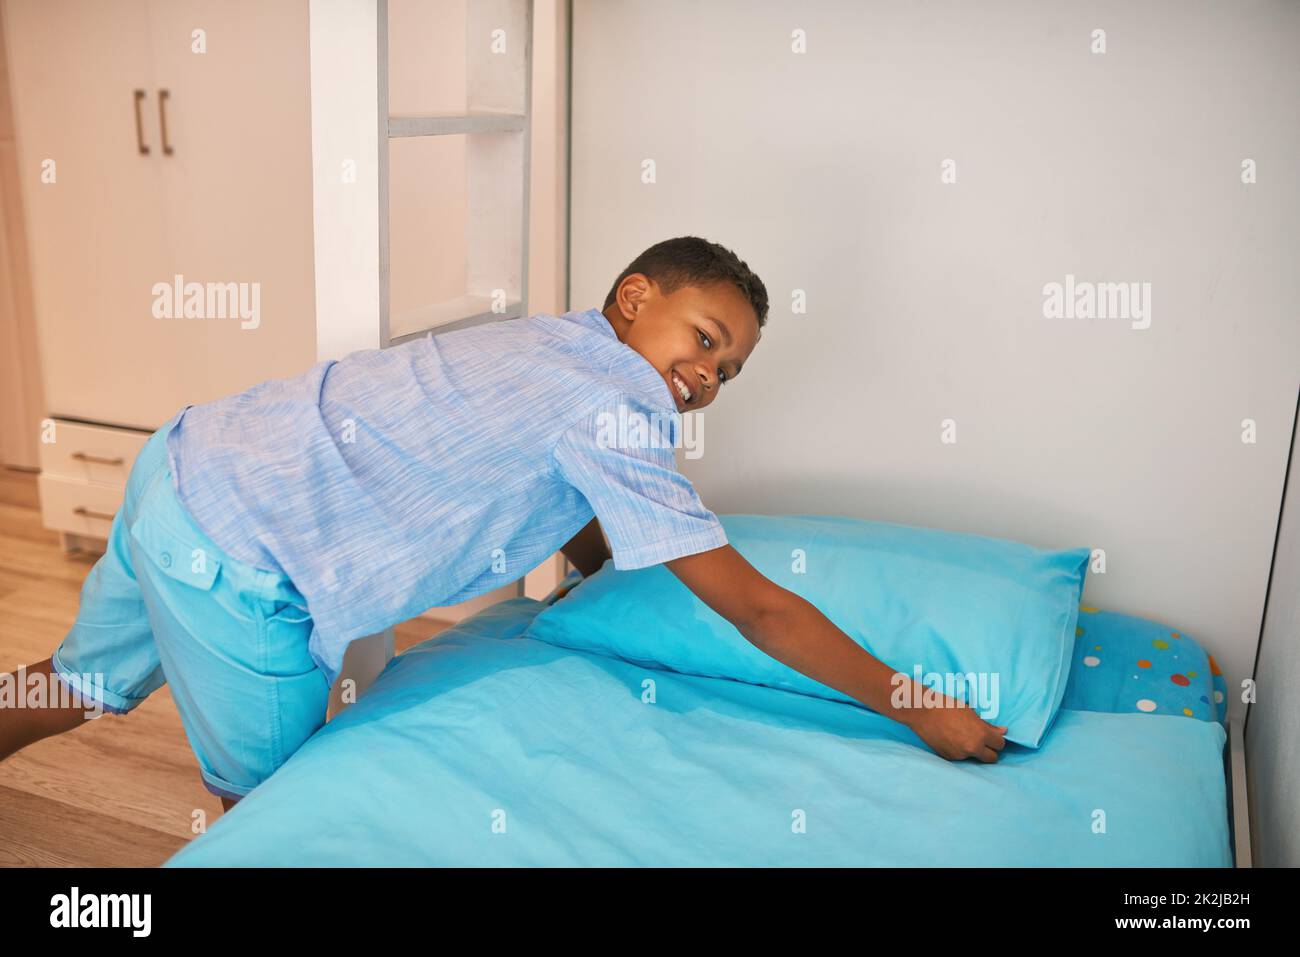 Das Bett wird genammt. Porträt eines jungen Jungen, der ein Bett macht. Stockfoto